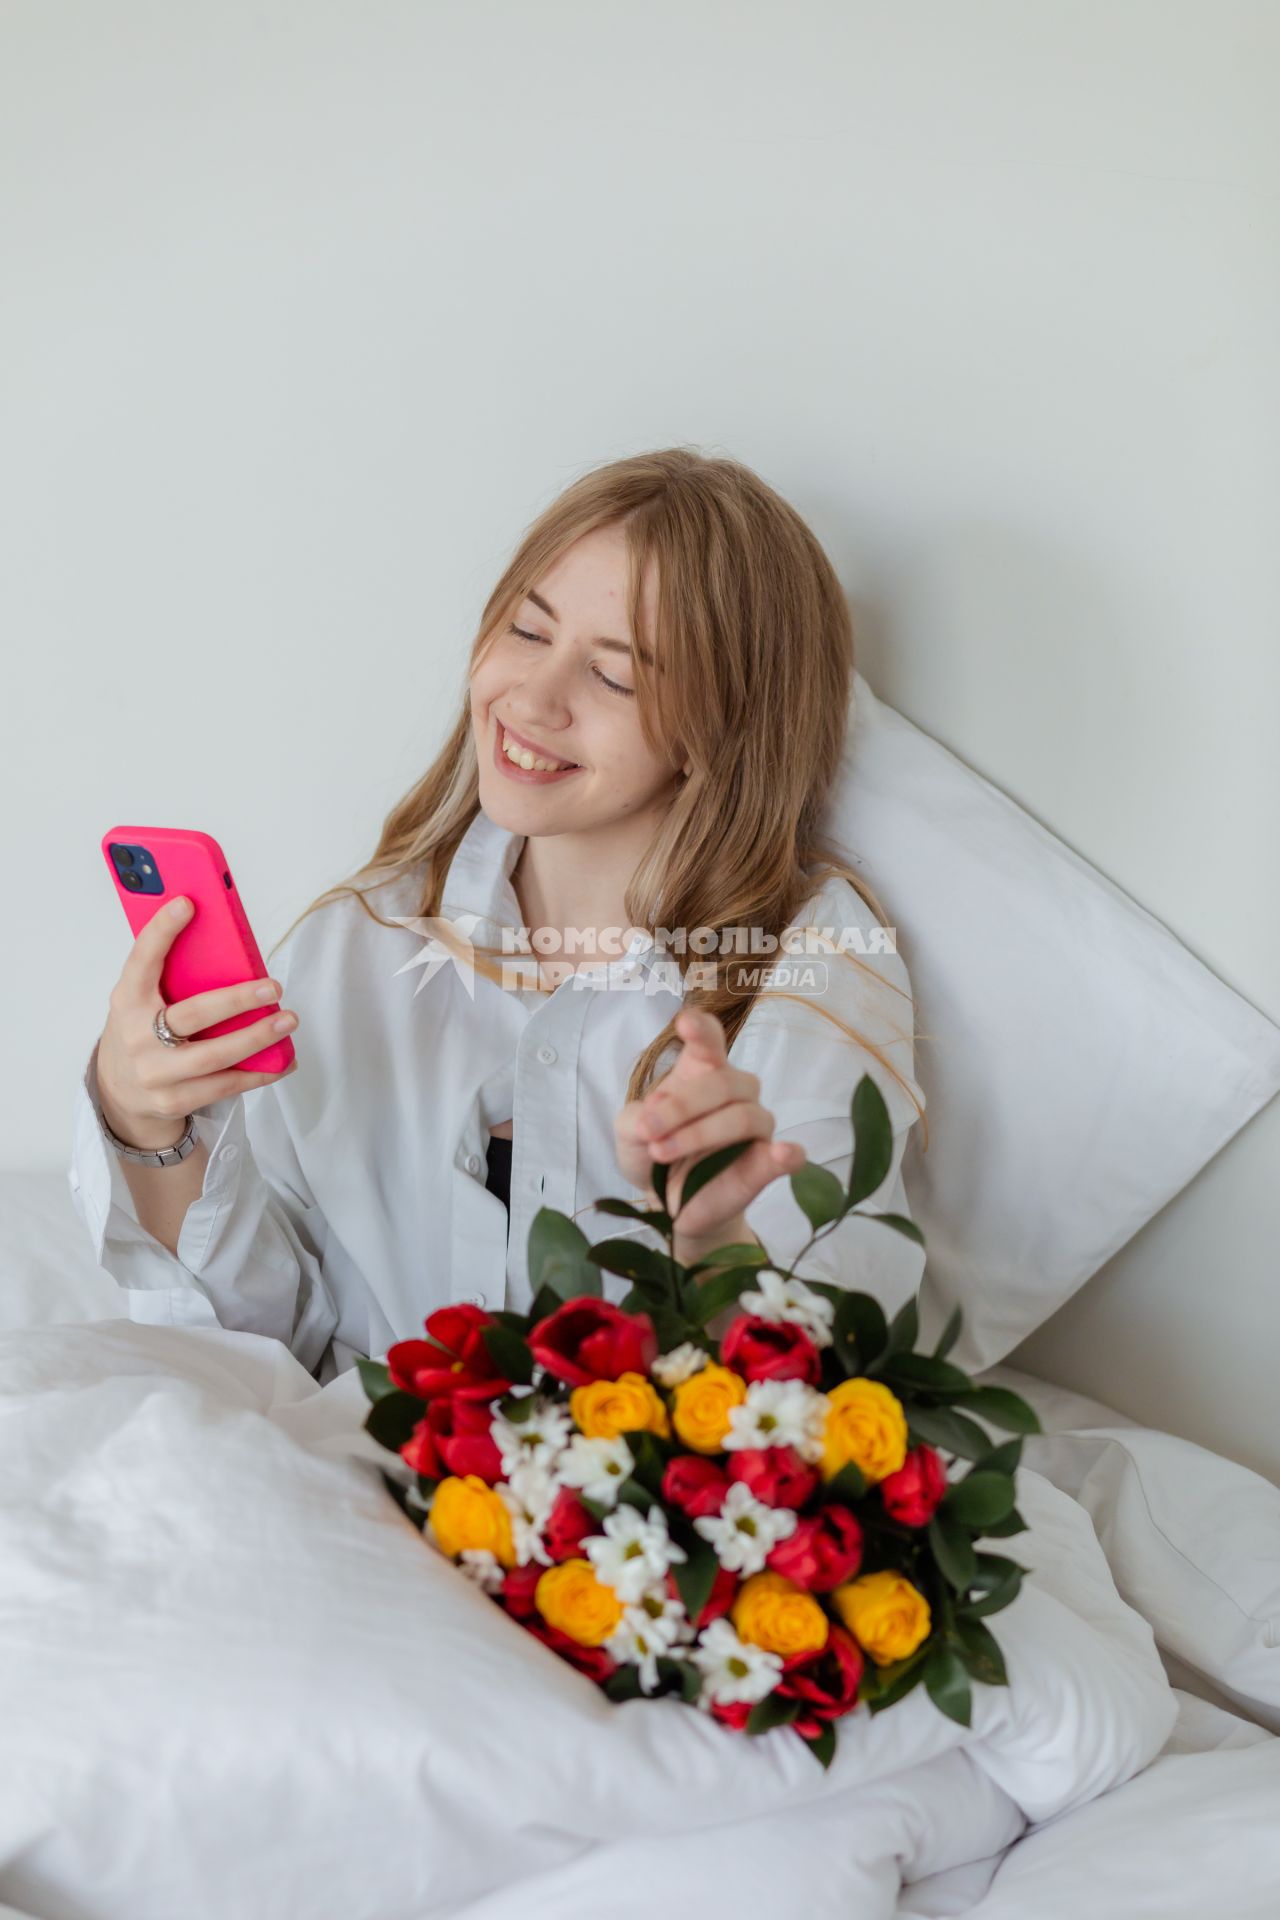 Красноярск. Девушка с мобильным телефоном и букетом цветов лежит в постели.